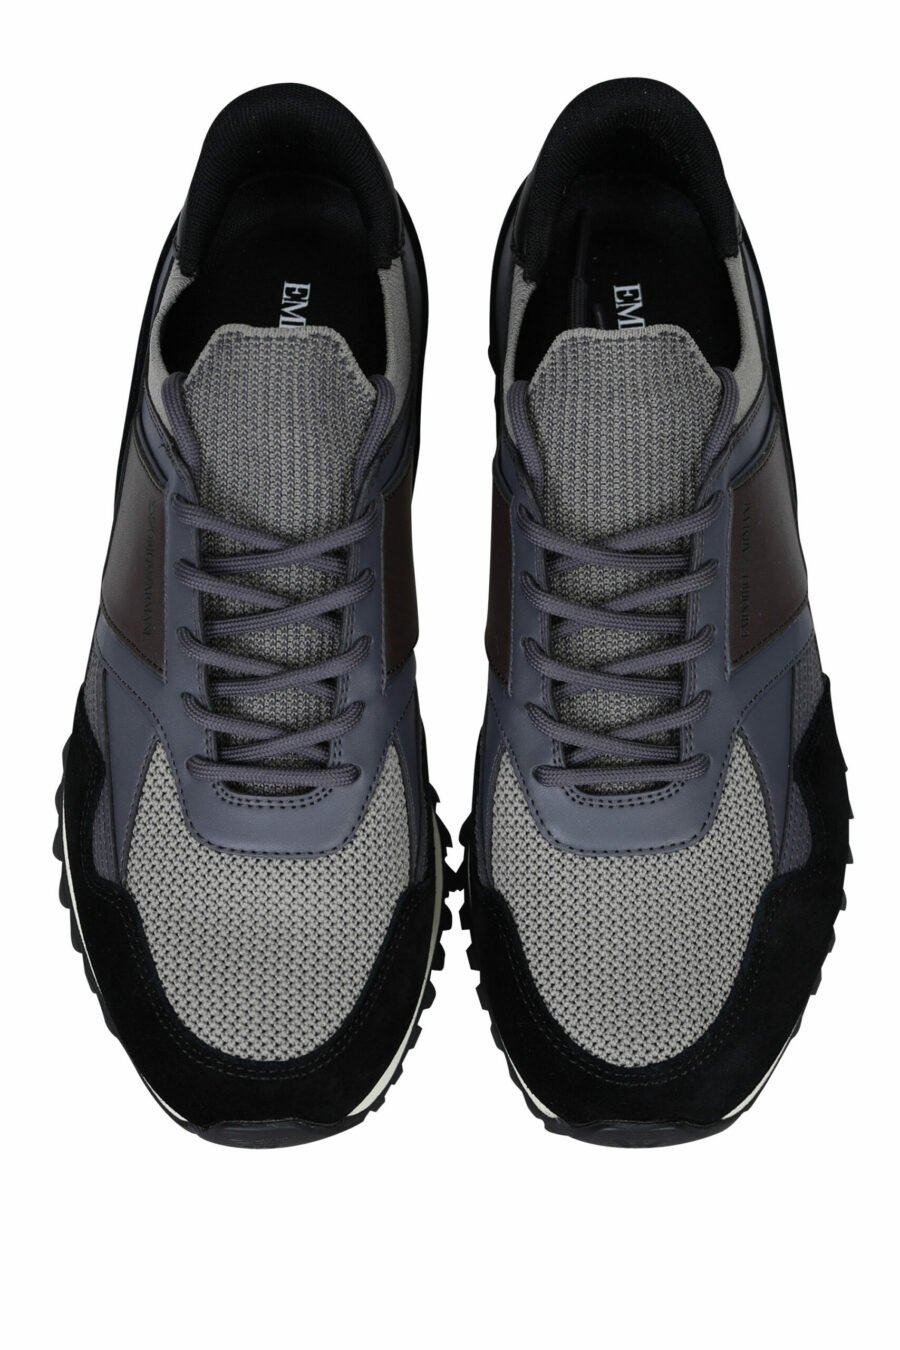 Zapatillas negras con gris y minilogo águila - 8057767401443 4 1 scaled